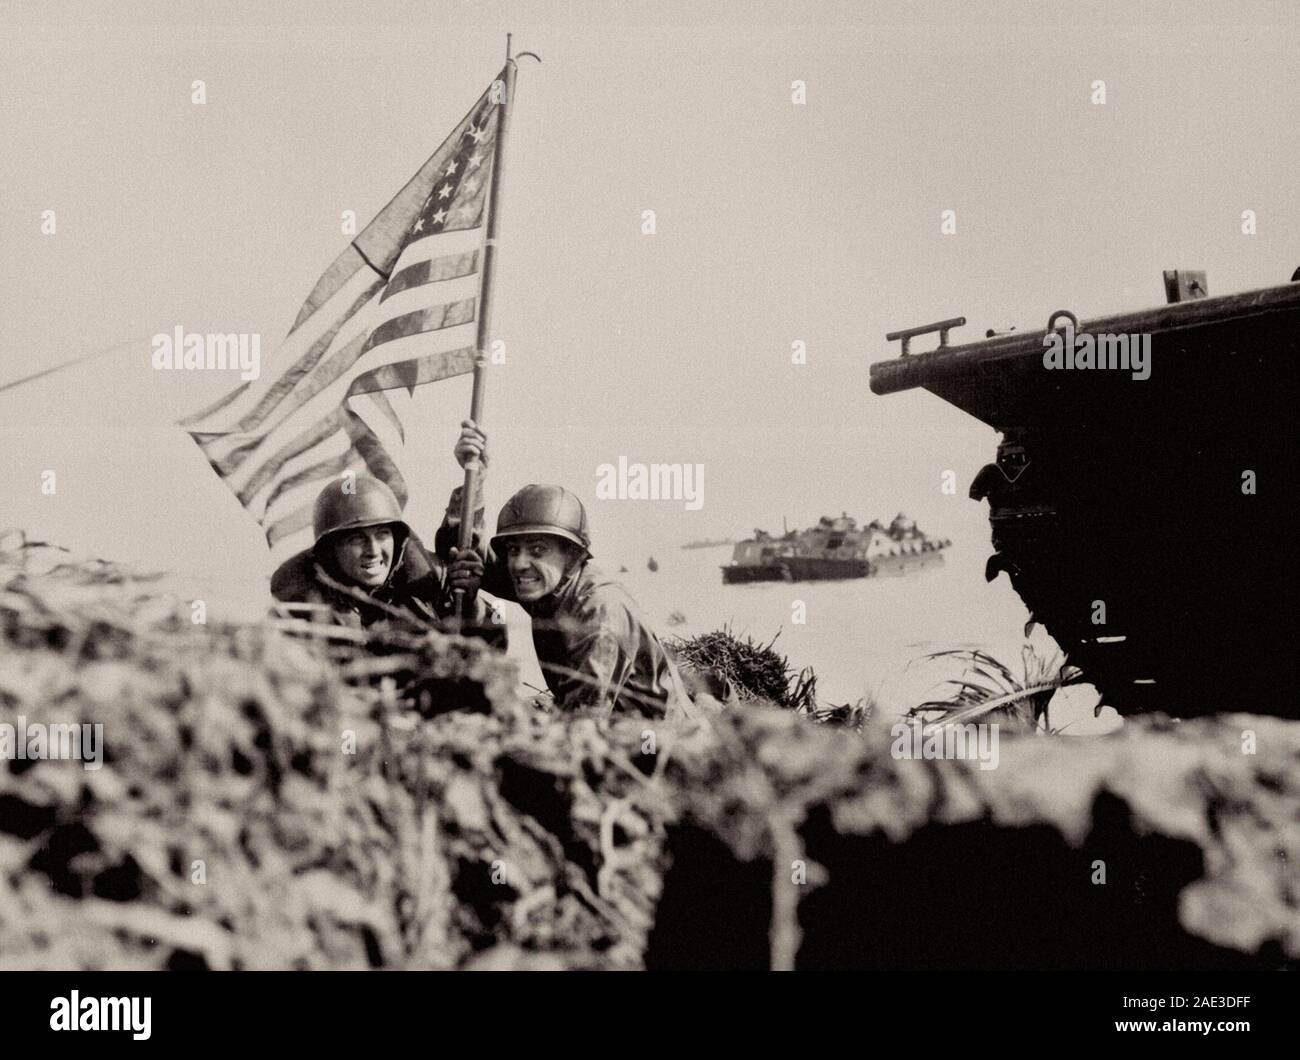 Erste Flagge auf Guam auf bootshaken Mast. Zwei US-amerikanische Offiziere Werk der amerikanischen Flagge auf Guam acht Minuten nach U.S. Marines und Armee Angriff Truppen lande Stockfoto